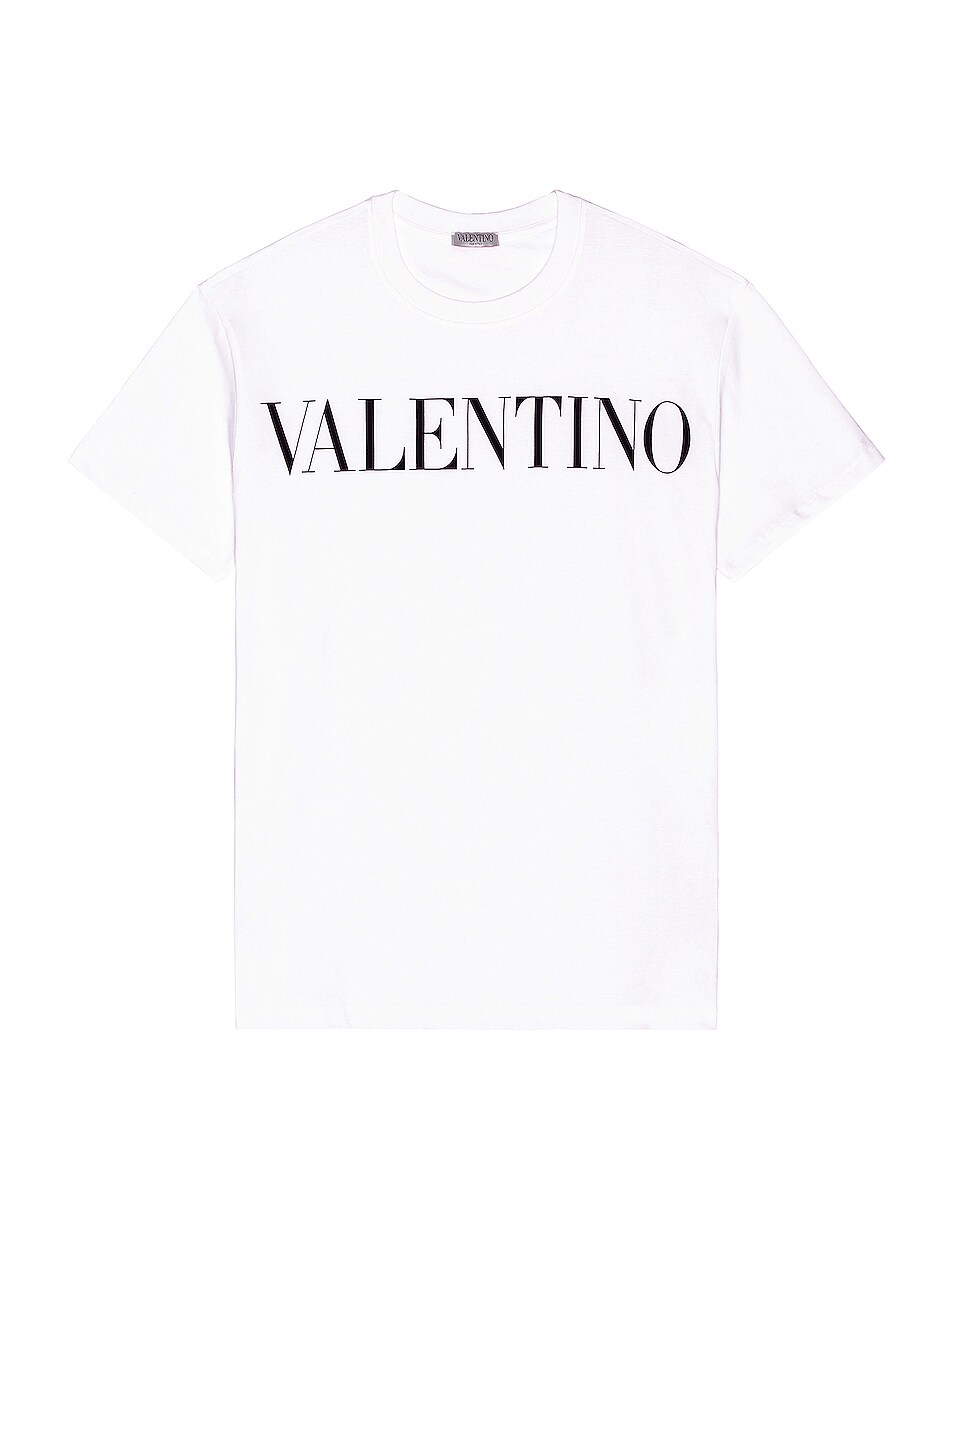 Valentino Logo Tee in White & Black | FWRD